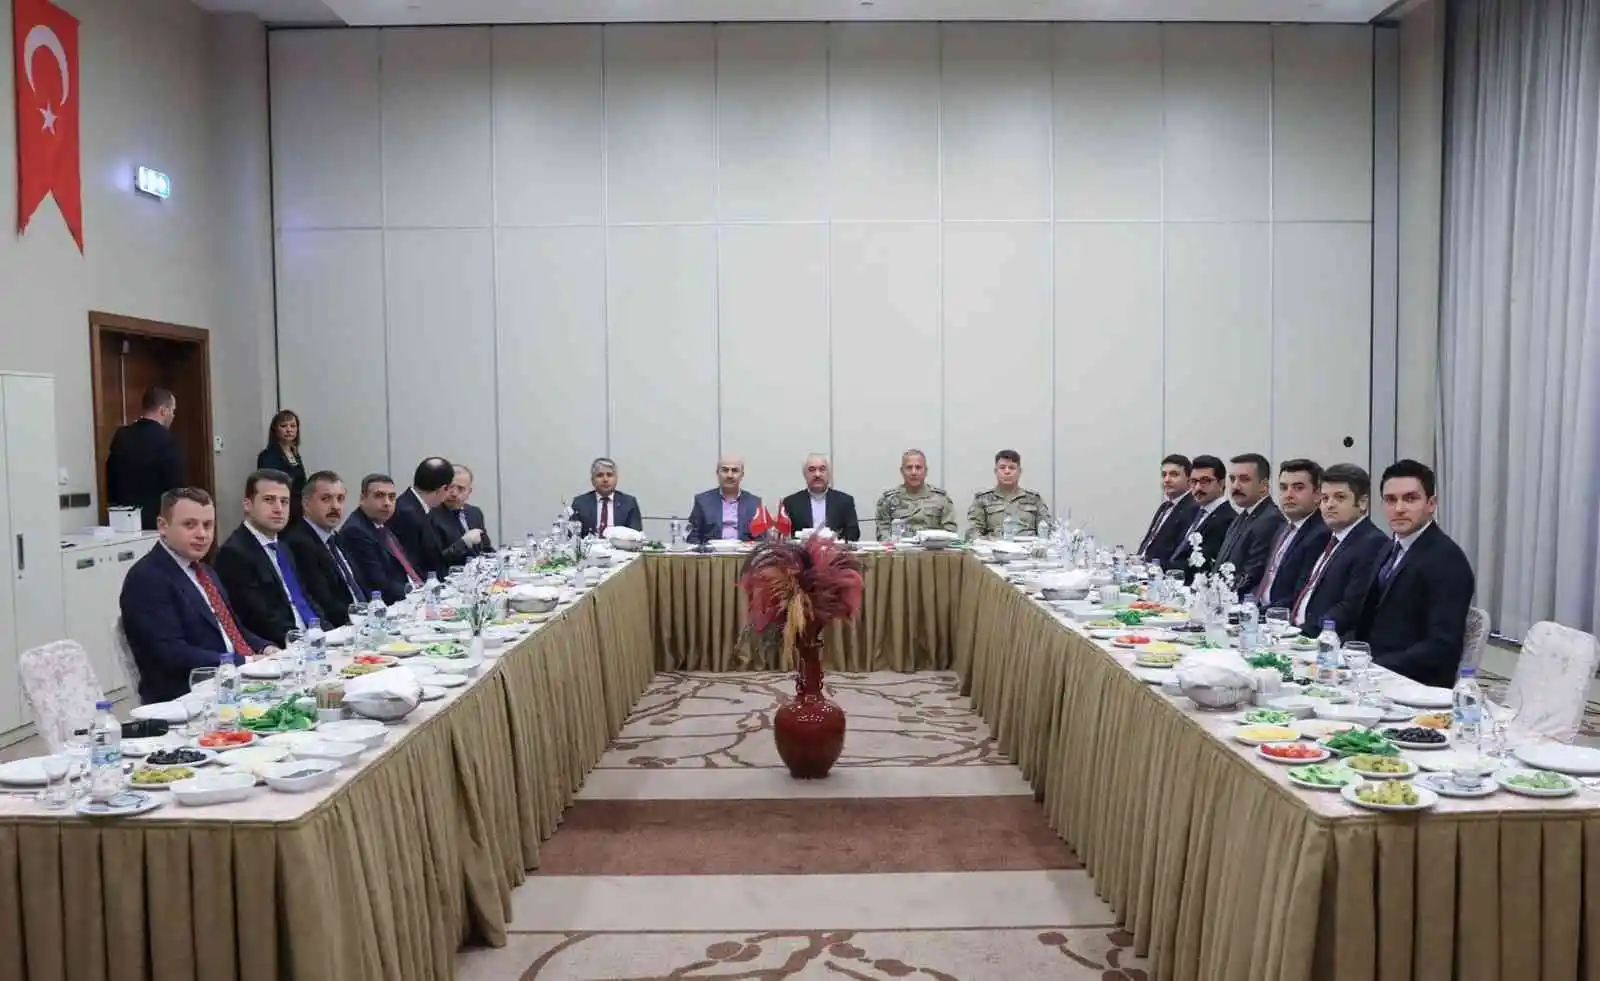 İçişleri Bakan Yardımcısı Ersoy'un Başkanlığında değerlendirme toplantısı
